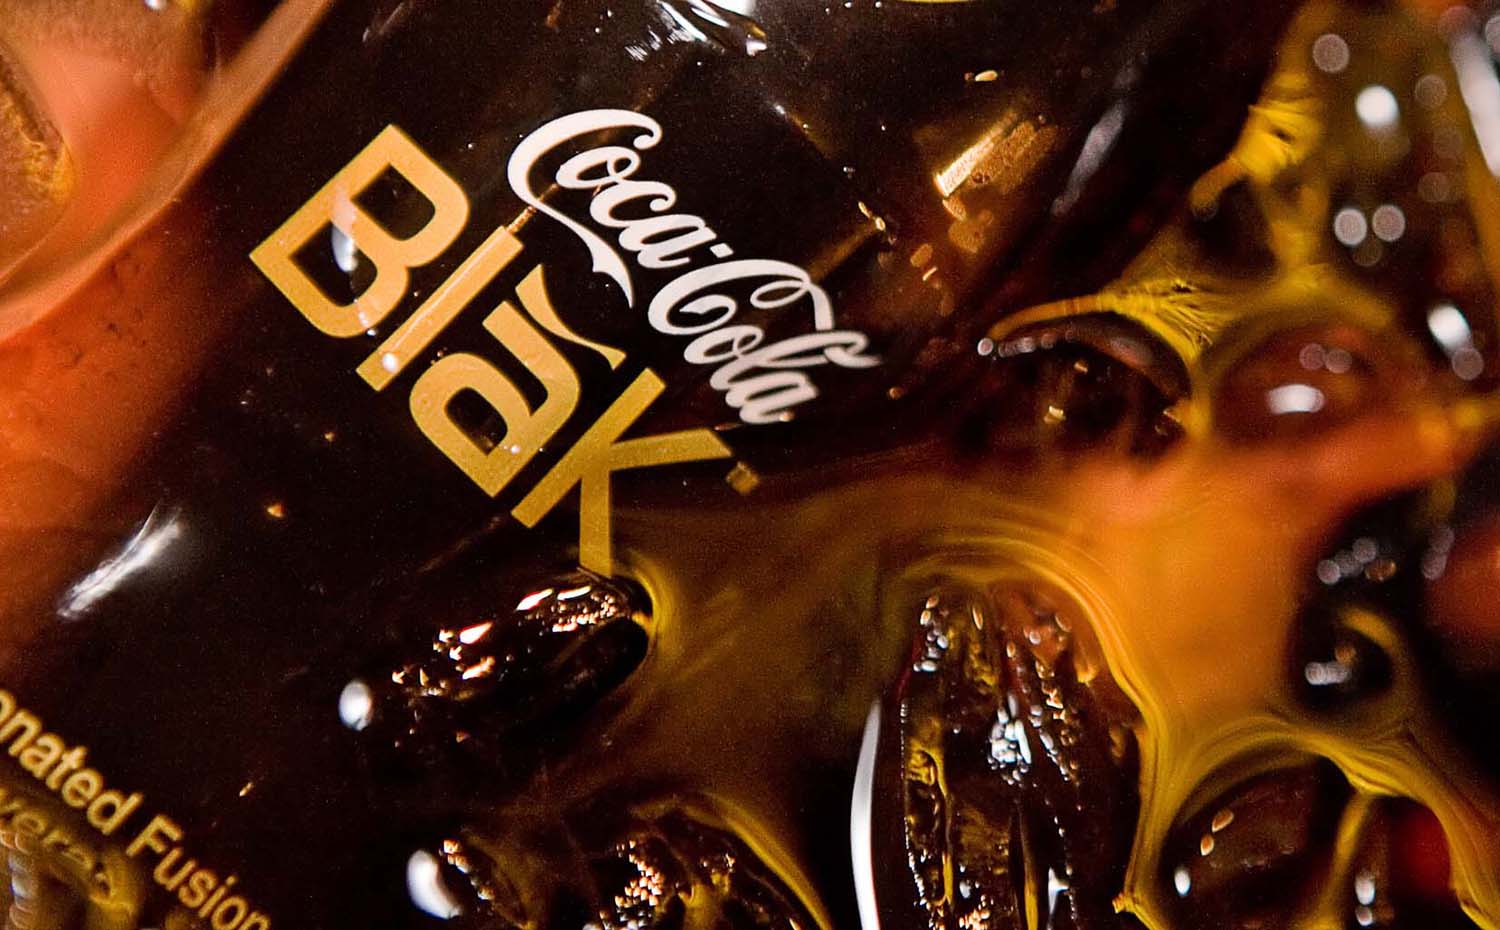 Commercial-Coke-Blak. Coca Cola quiso apuntarse a la moda de las bebidas energéticas con la Blak, una mezcla de Coca Cola y café lanzada en 2006. Dejó de venderse apenas dos años después